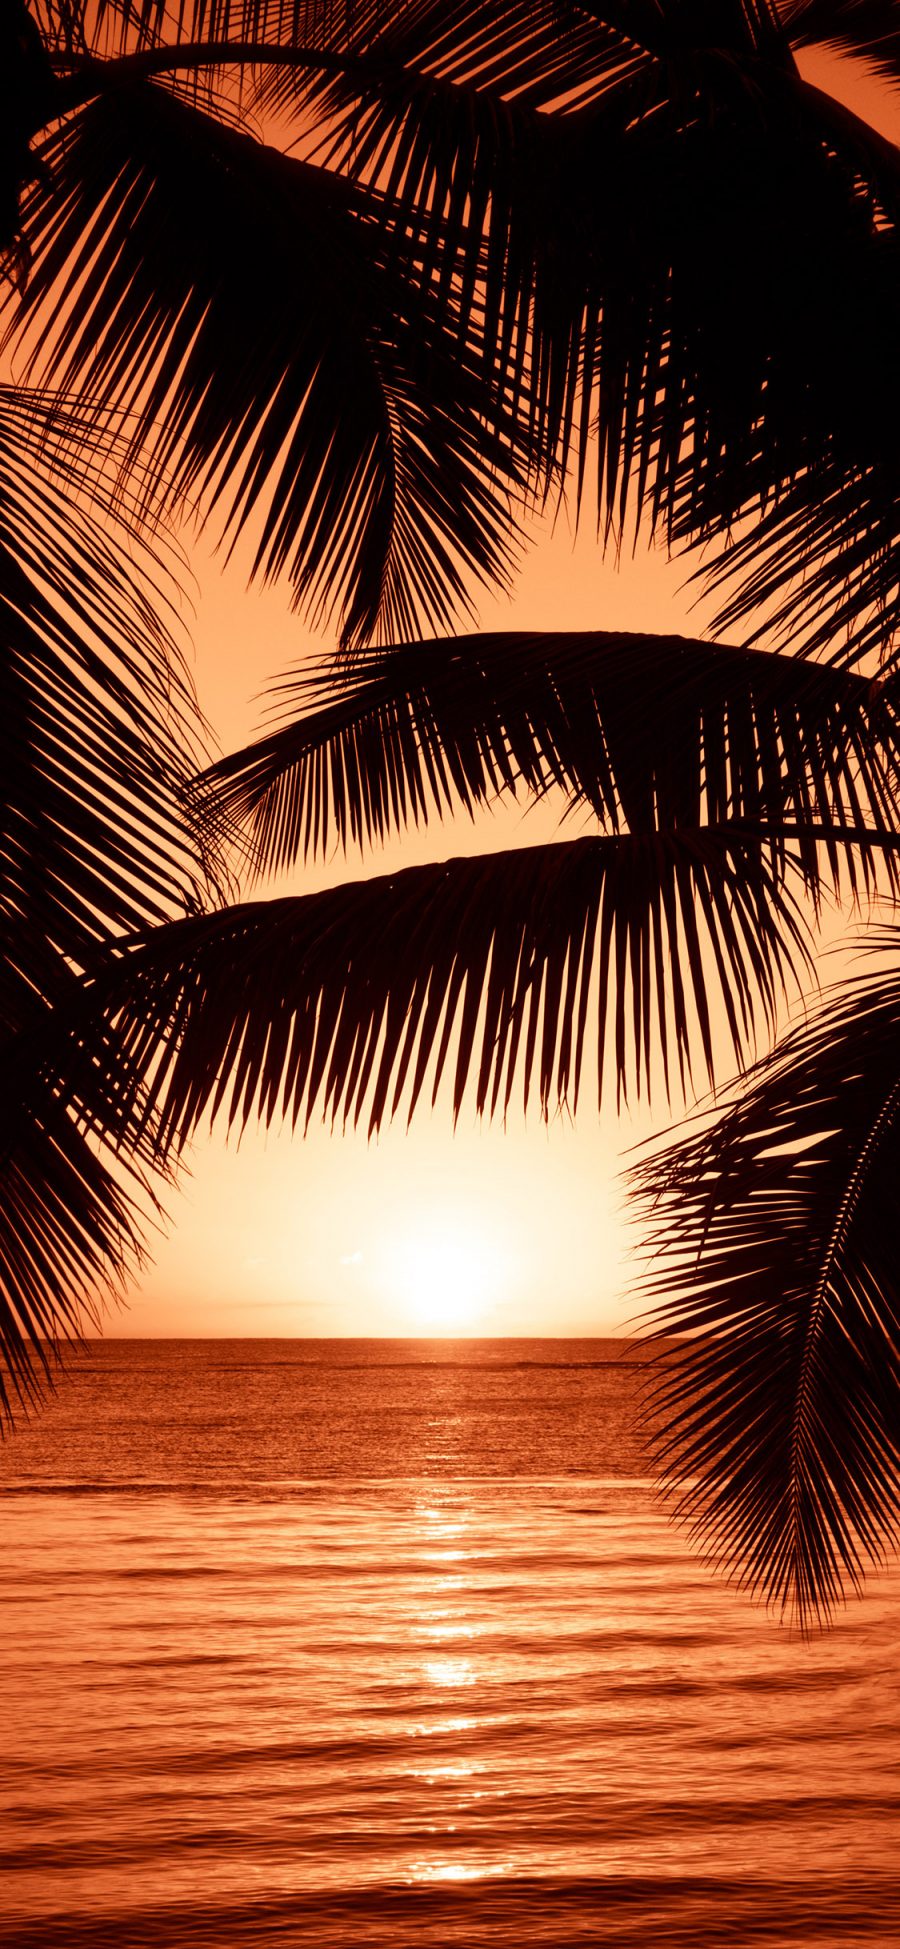 [2436×1125]海边 落日 晚霞 椰树 美景 苹果手机壁纸图片